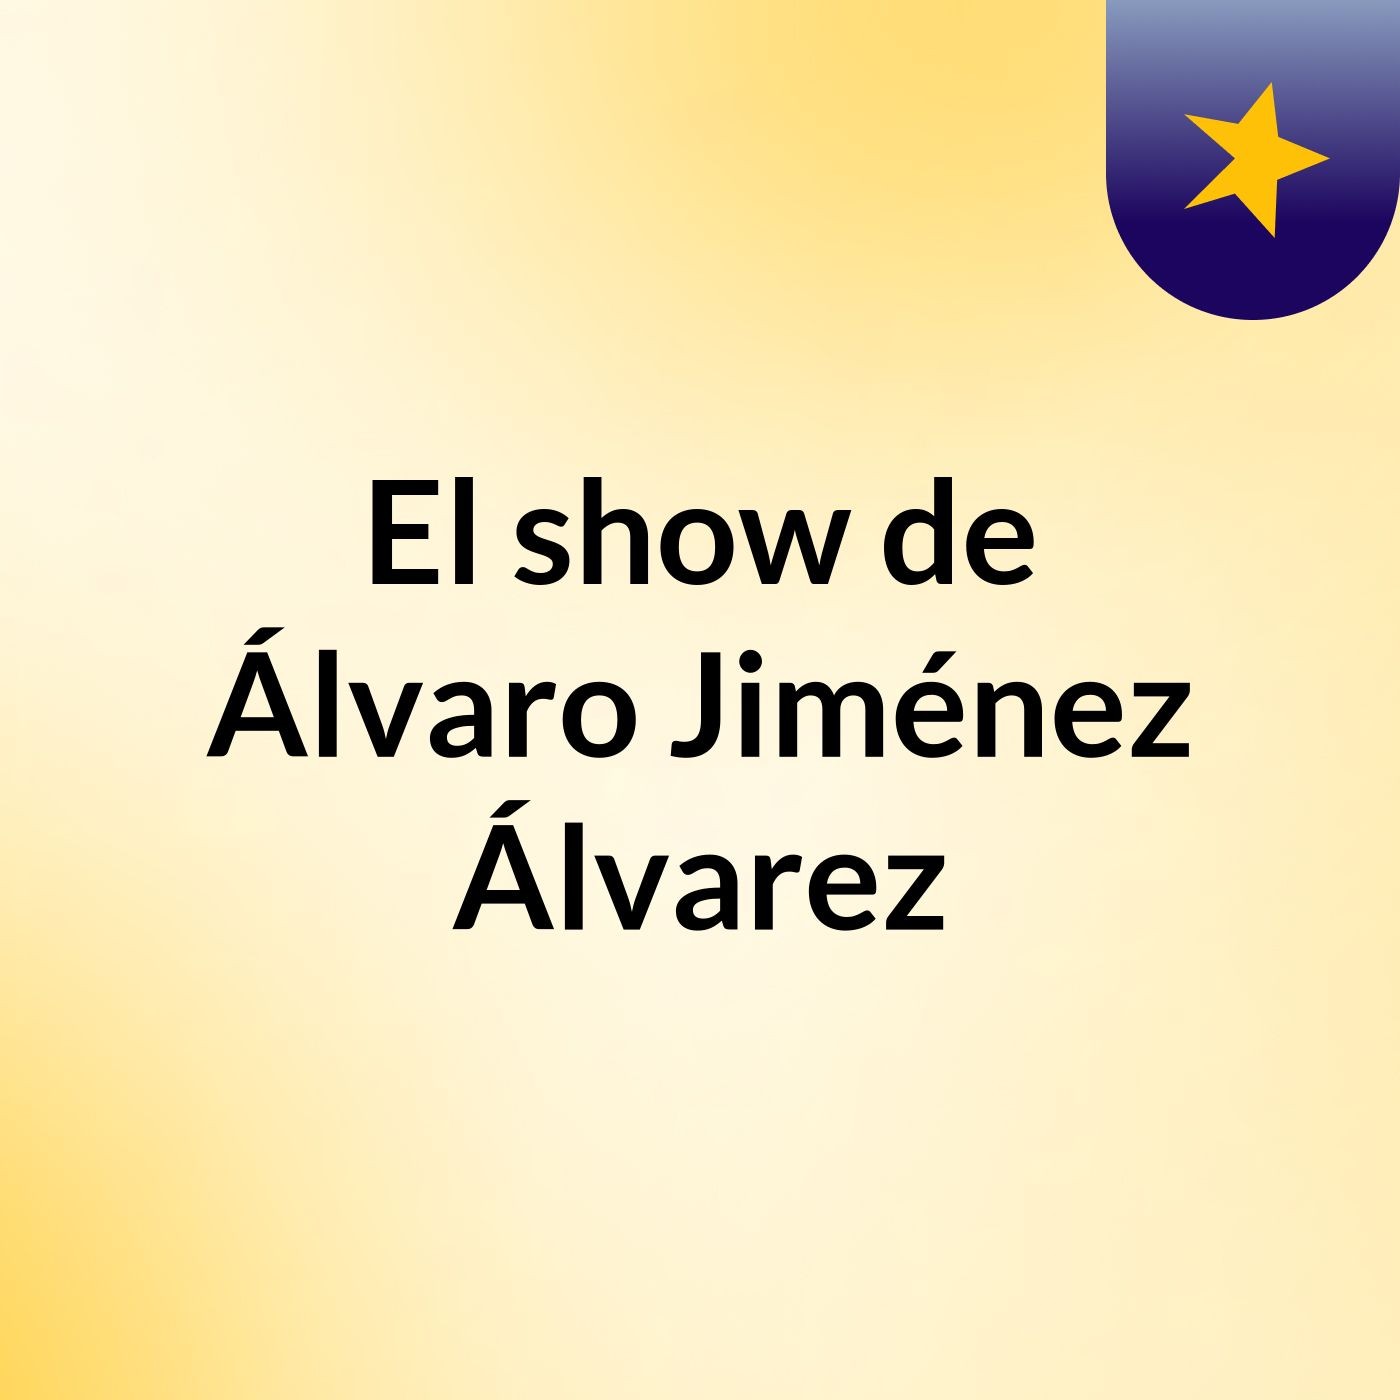 El show de Álvaro Jiménez Álvarez